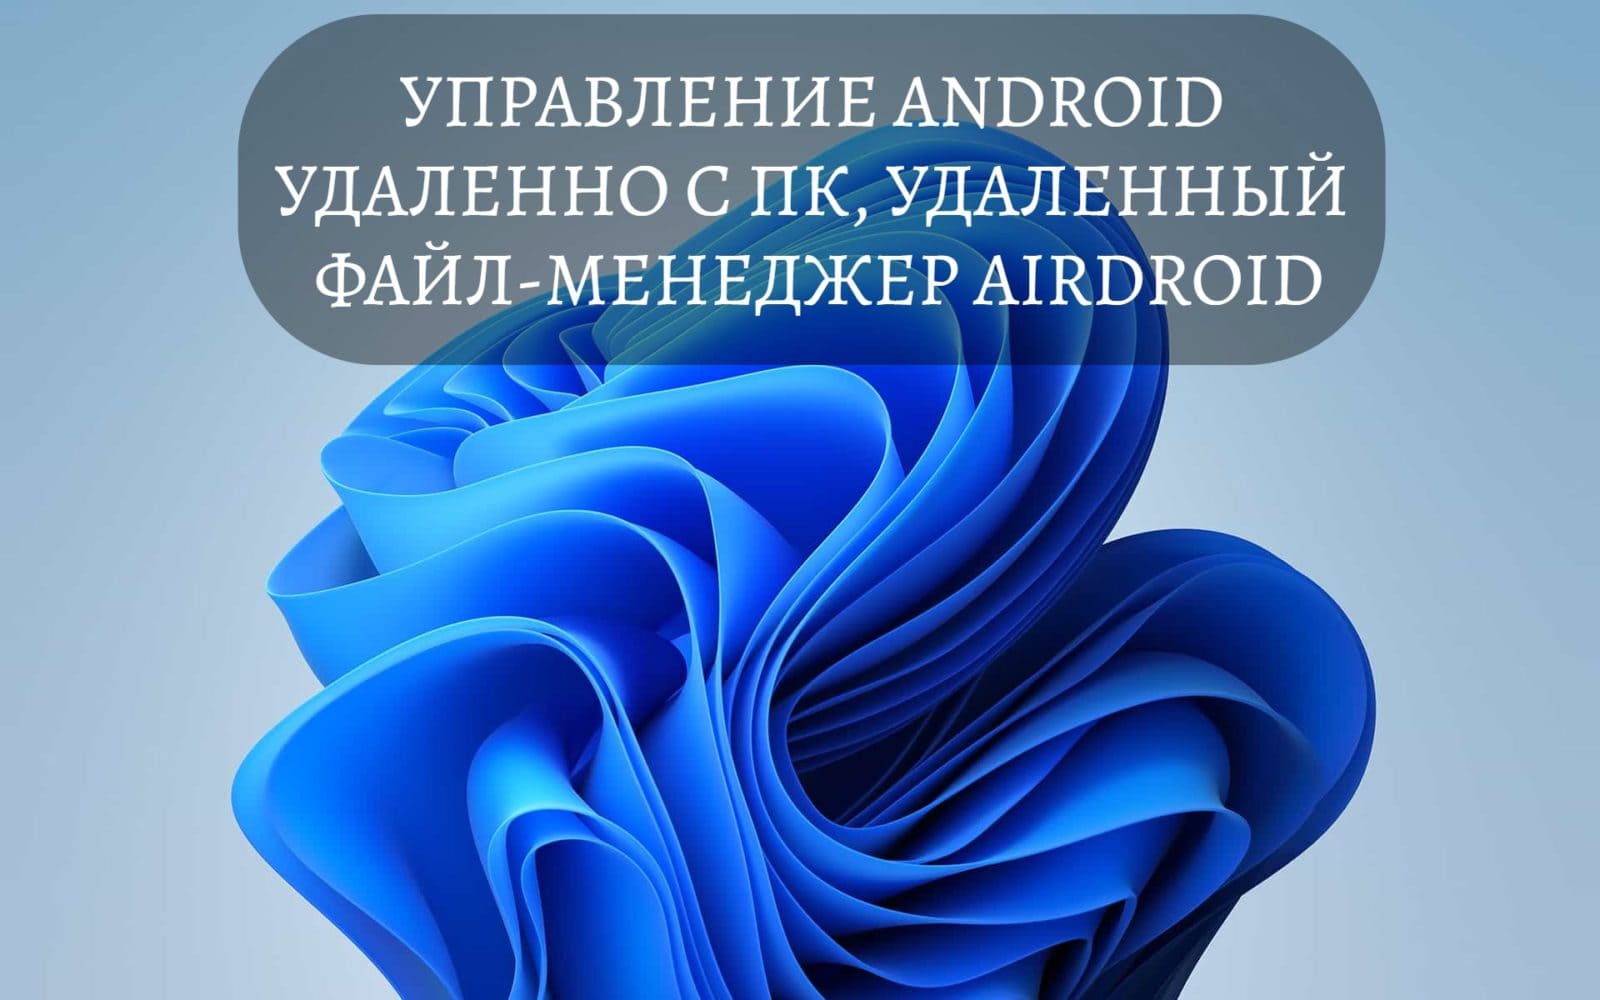 Управление Android удаленно c ПК, удаленный файл-менеджер AirDroid